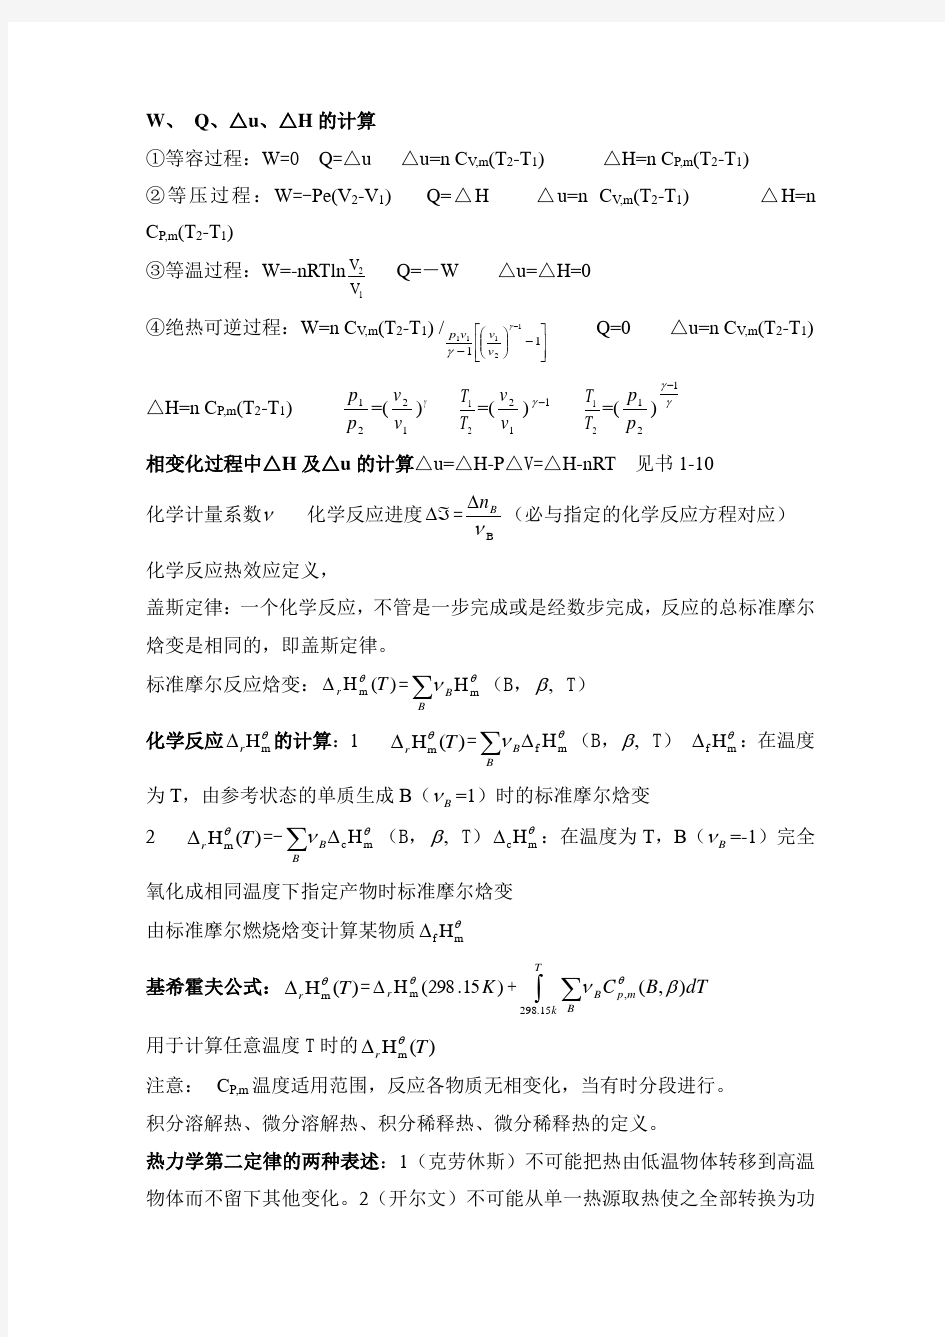 物理化学笔记总结-辽宁科技大学金材